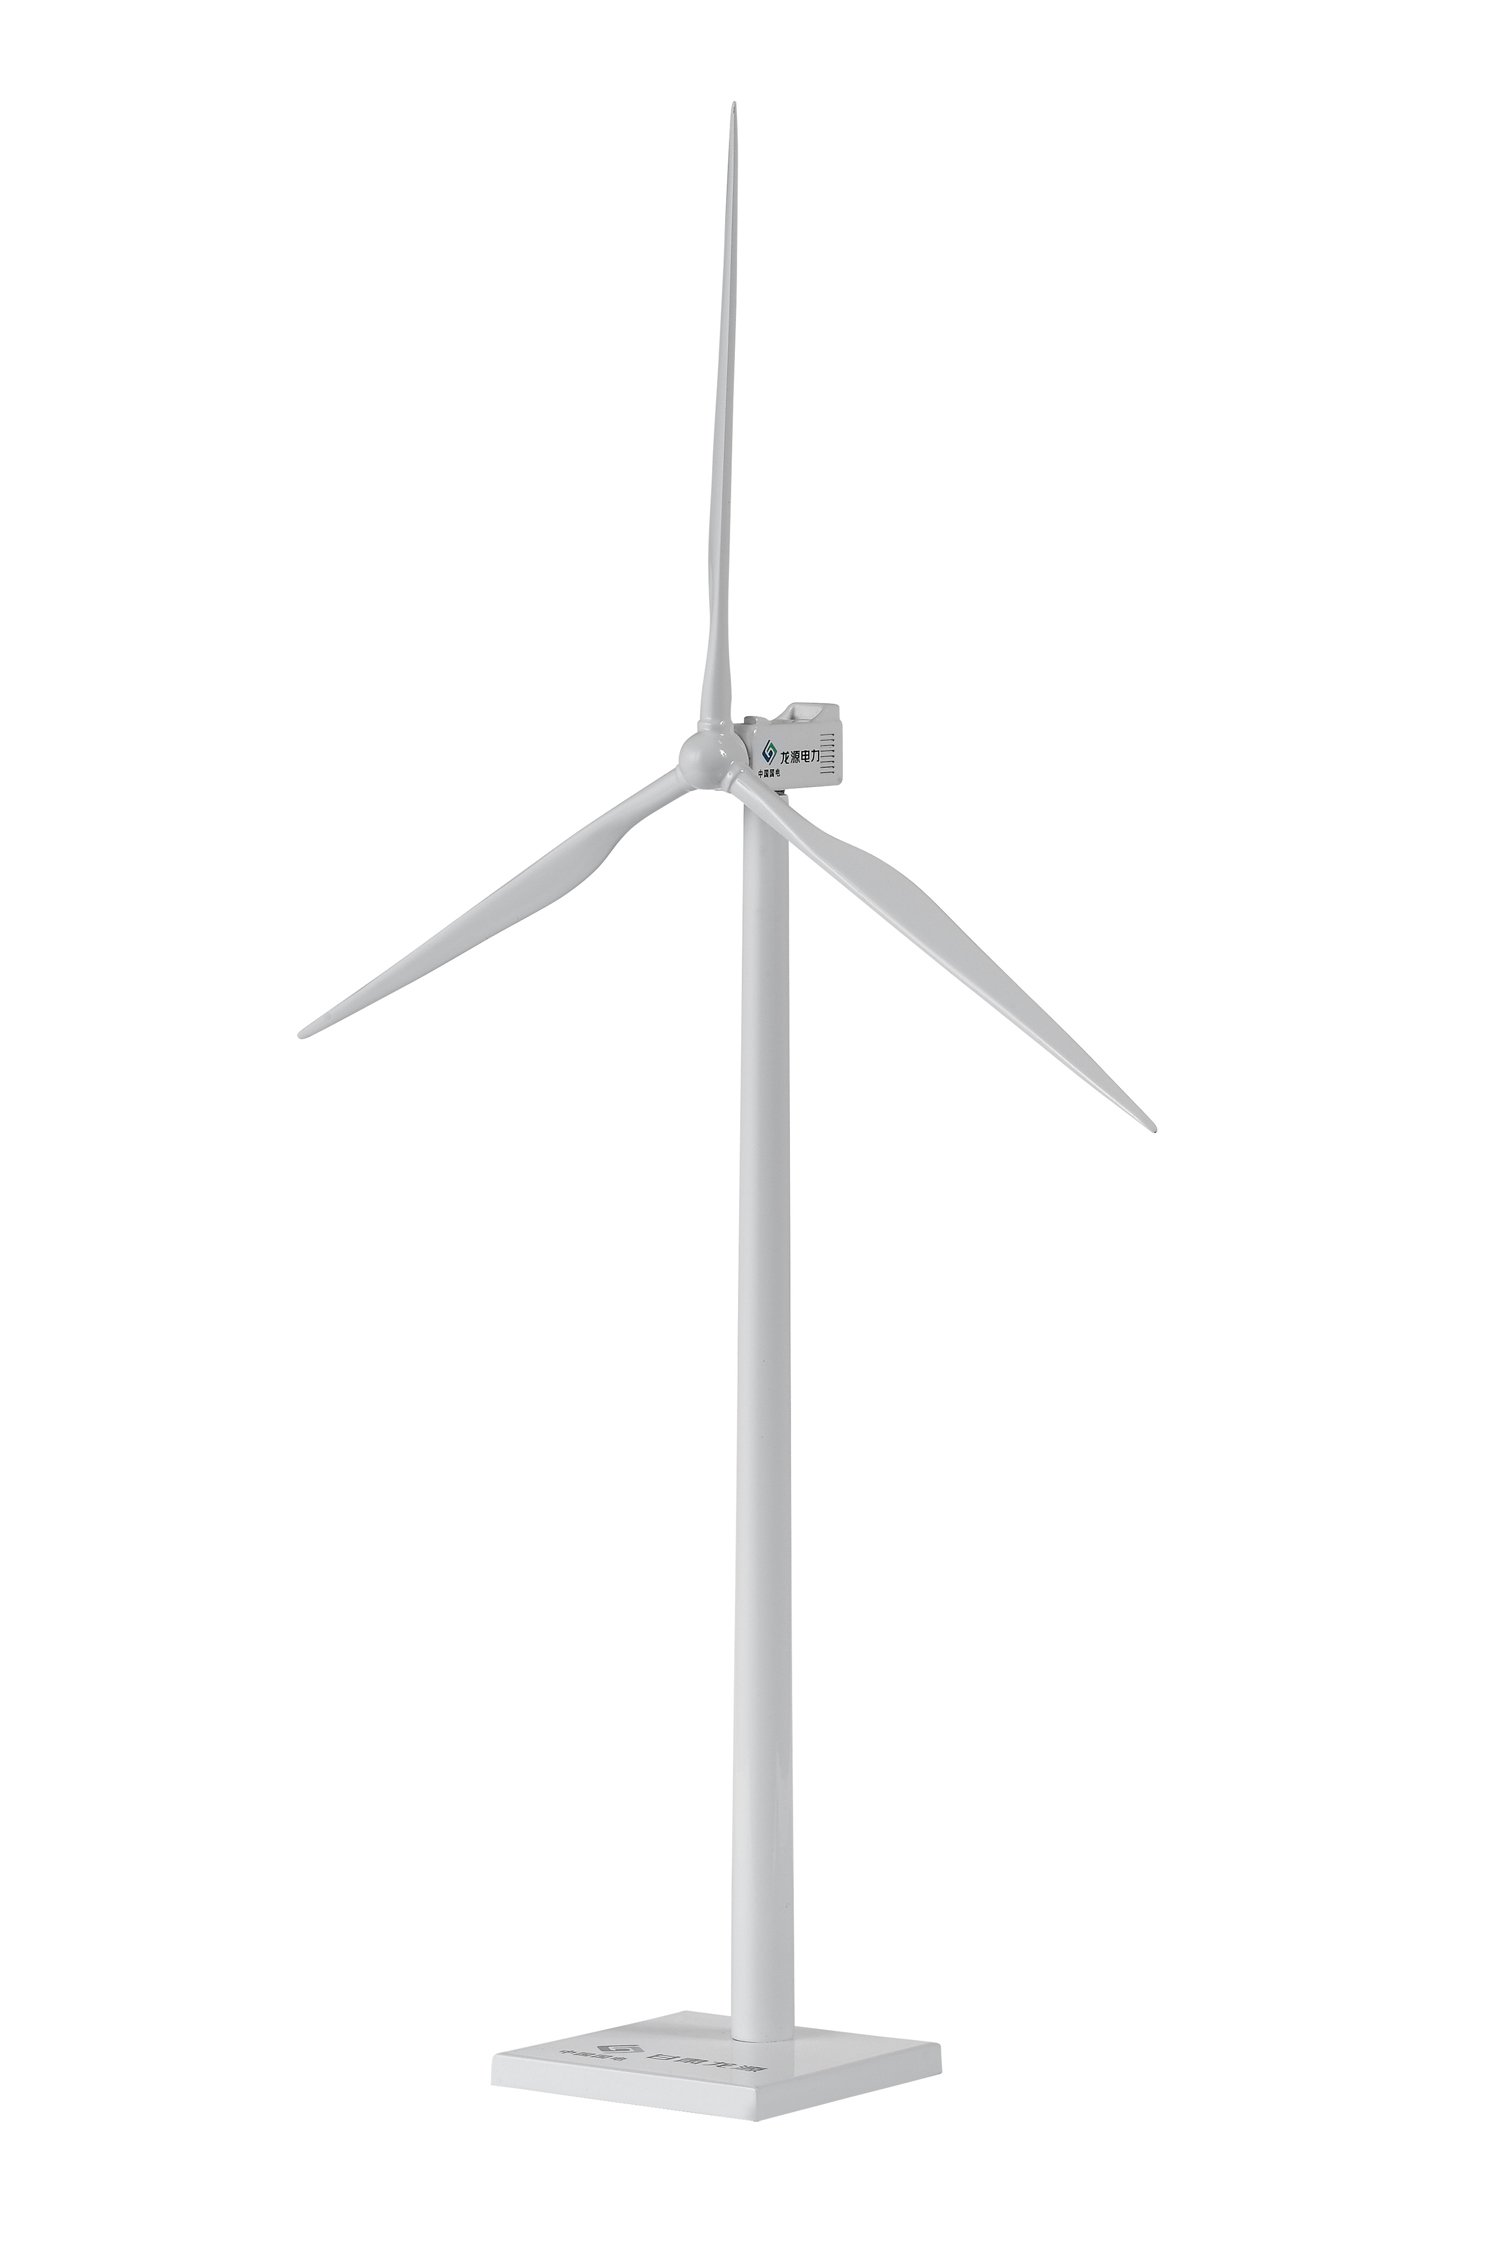 风力发电机模型hrfn-01-w